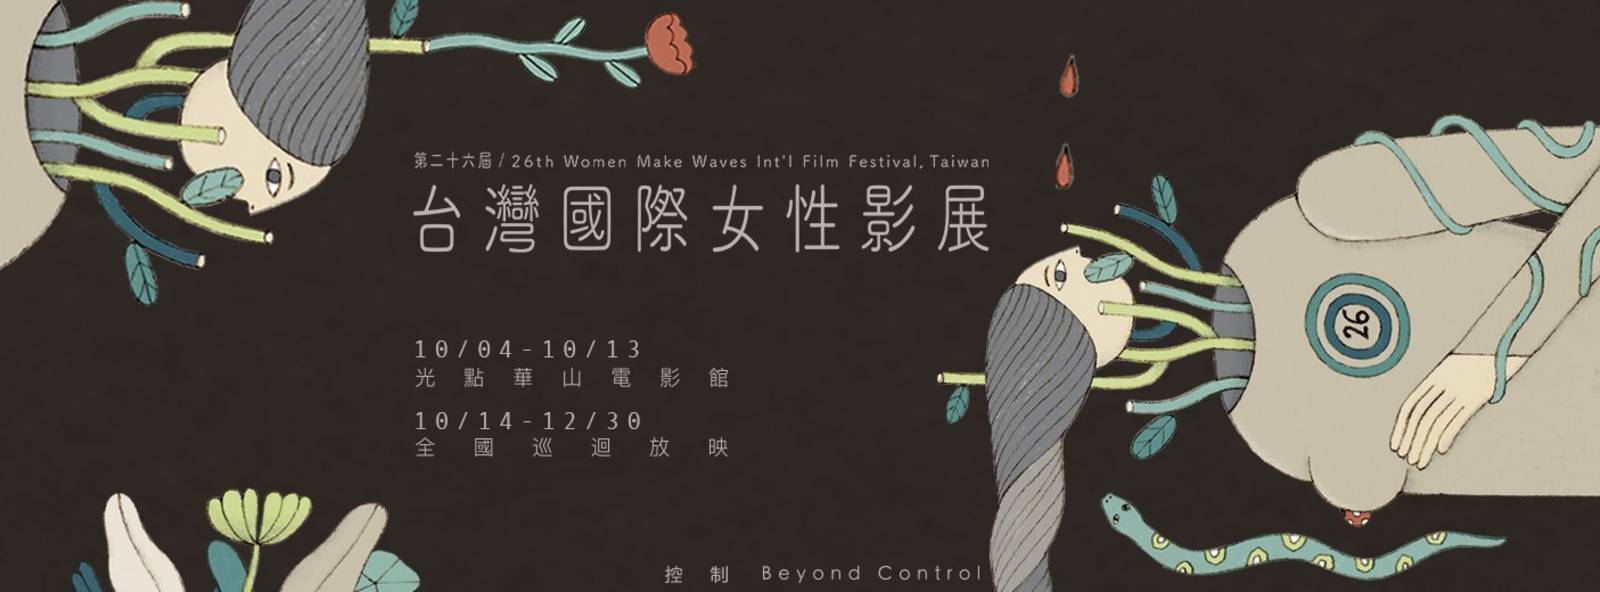 第26屆台灣國際女性影展